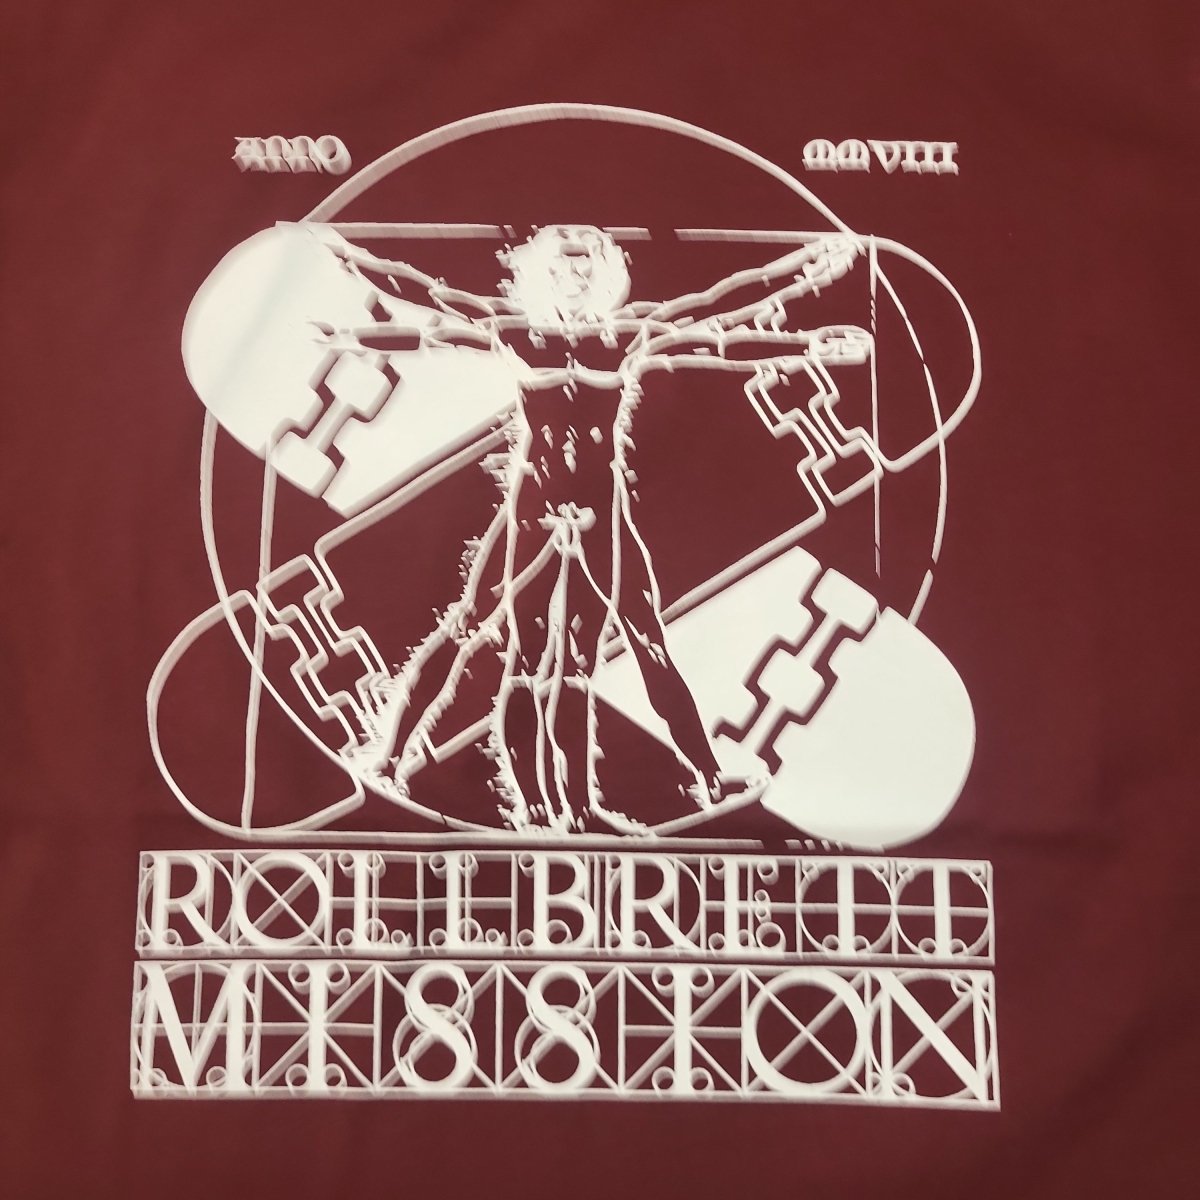 Rollbrett Mission Vitruvian Organic T-Shirt burgunder - Shirts & Tops - Rollbrett Mission